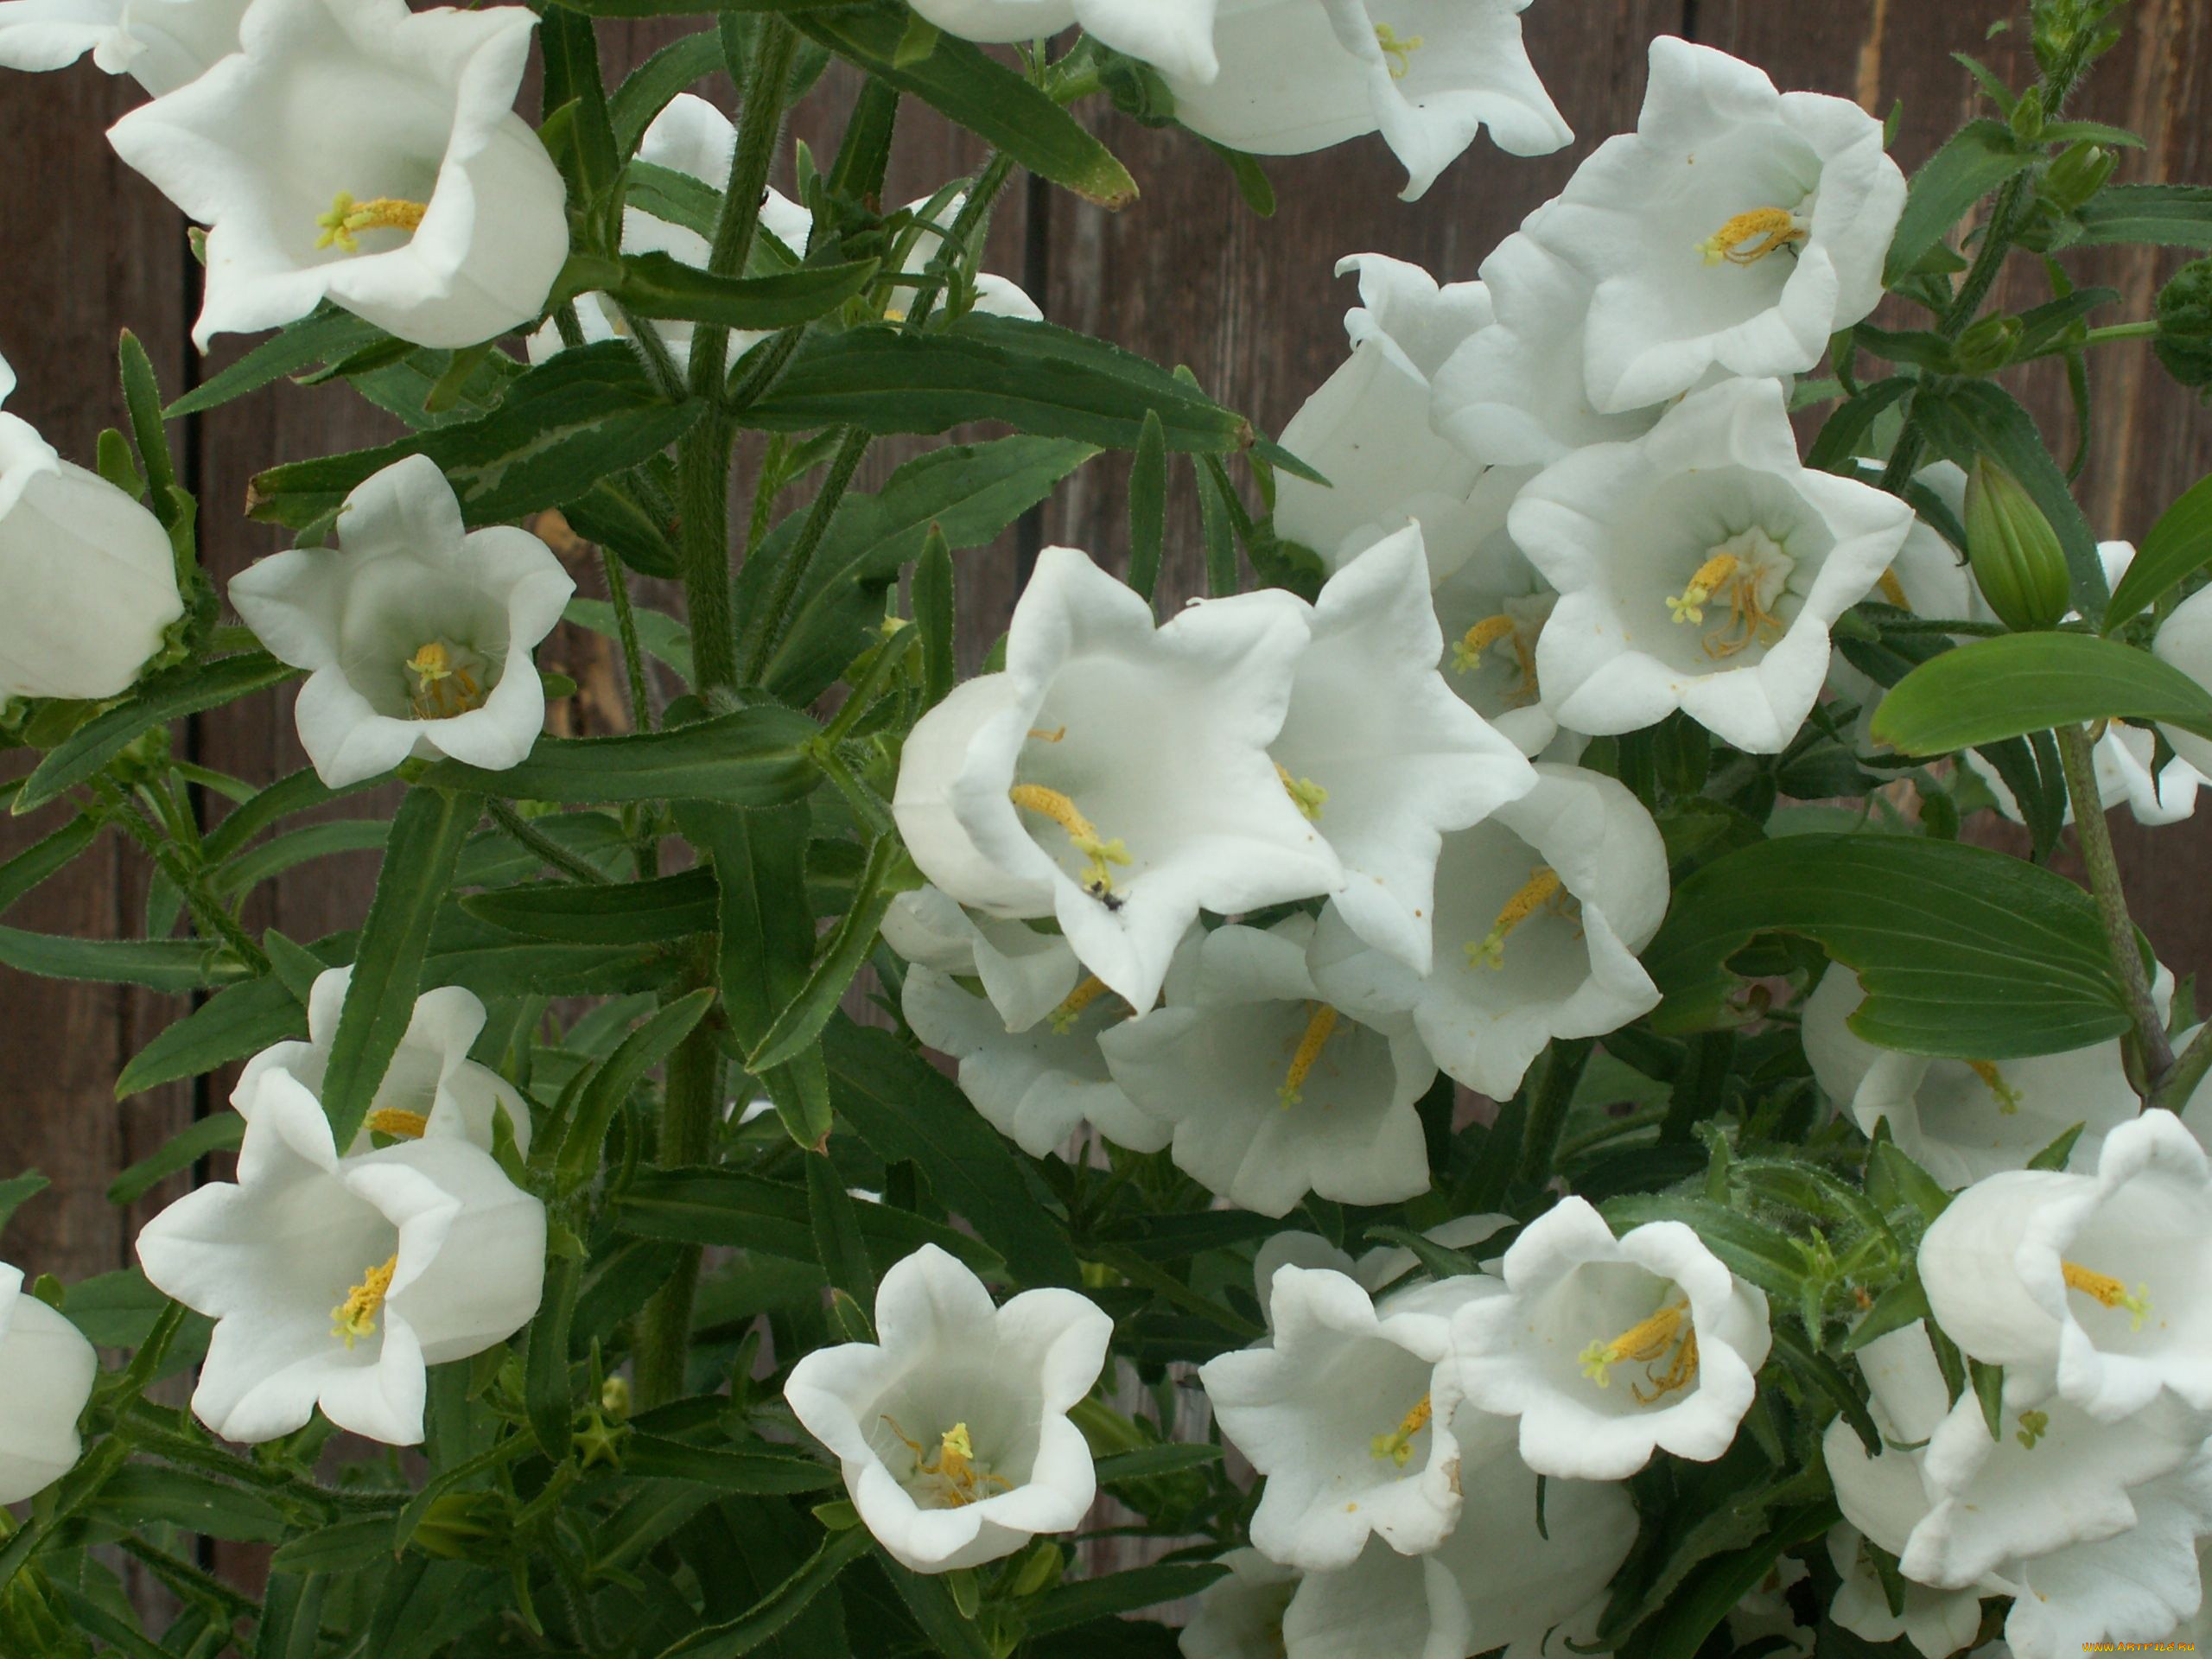 Белый цветок похожий на колокольчик фото